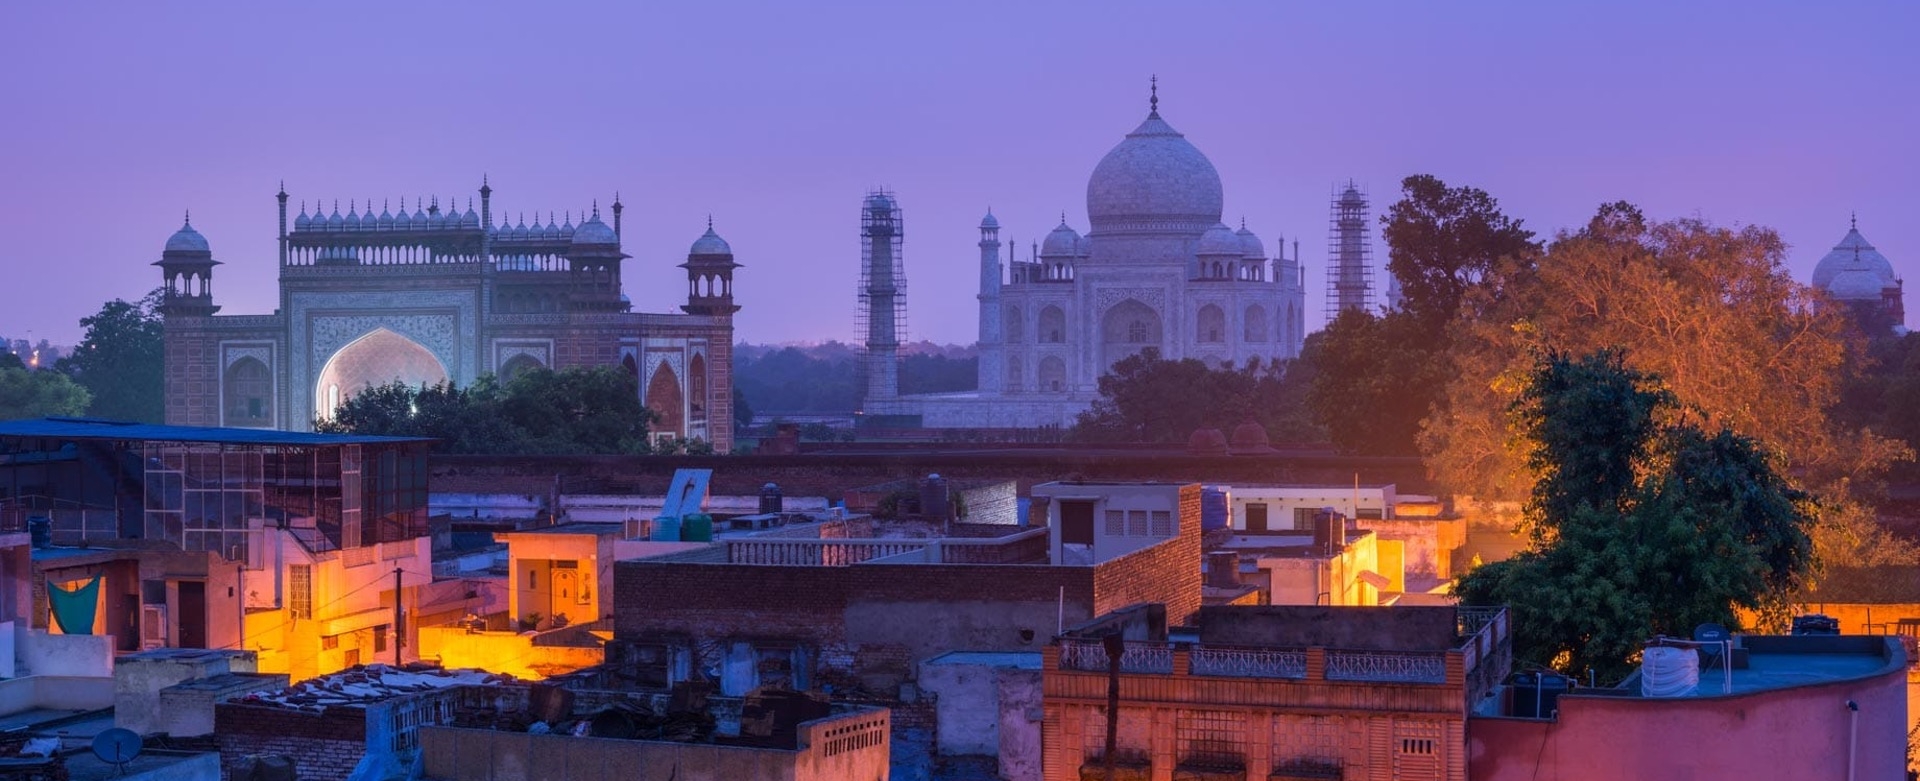 A view of the Taj Mahal at dusk